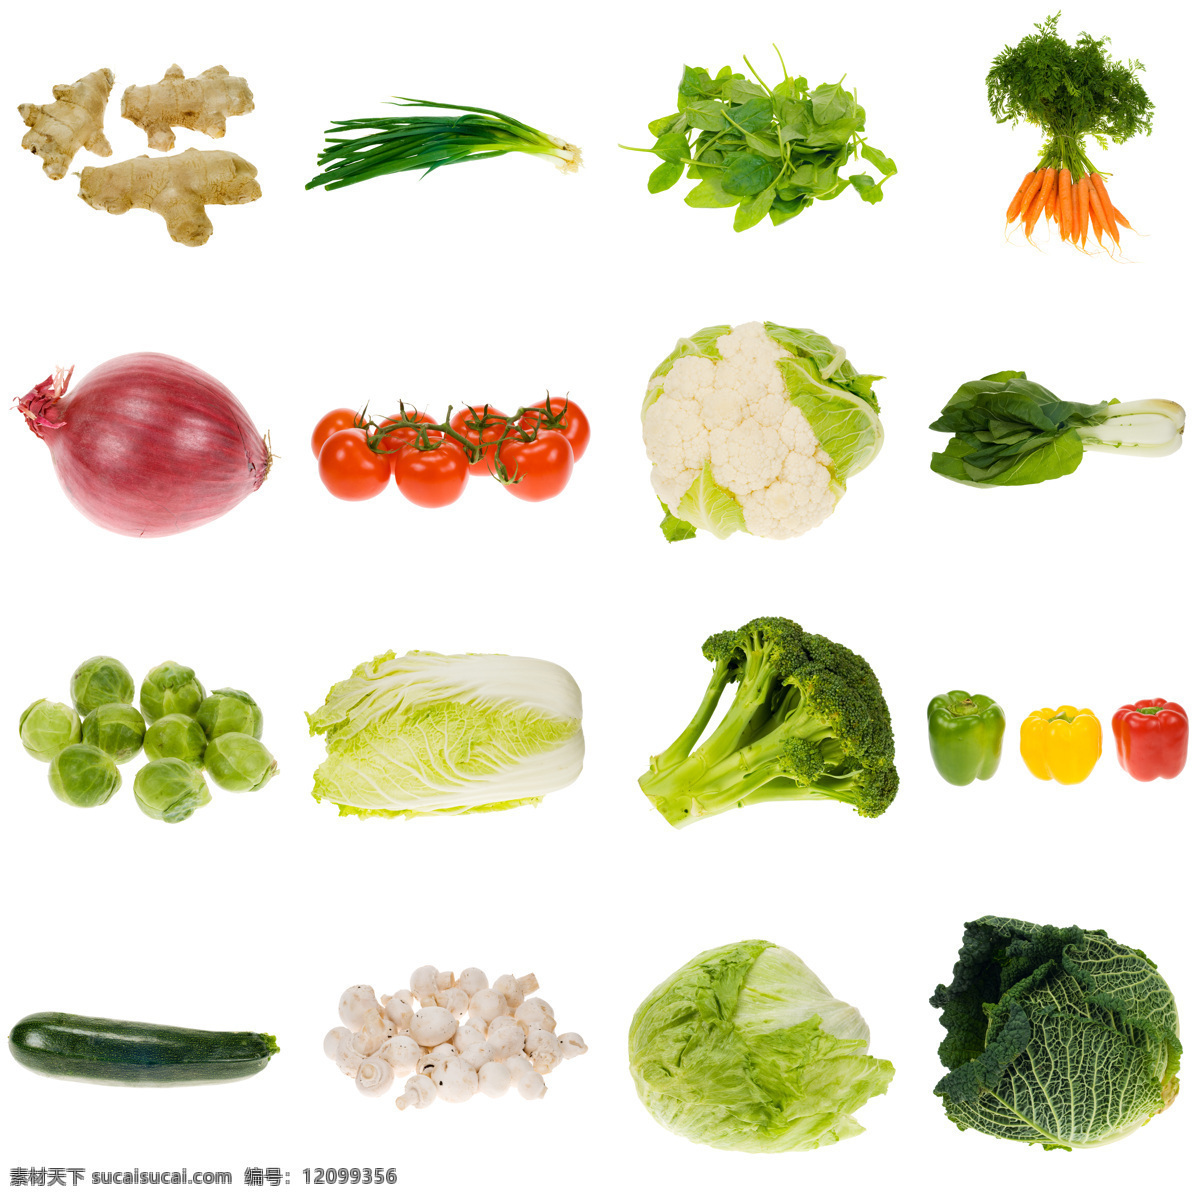 新鲜蔬菜 白菜 辣椒 西红柿 蕃茄 胡萝卜 南瓜 花菜 西兰花 青菜 洋葱 水果蔬菜 餐饮美食 白色